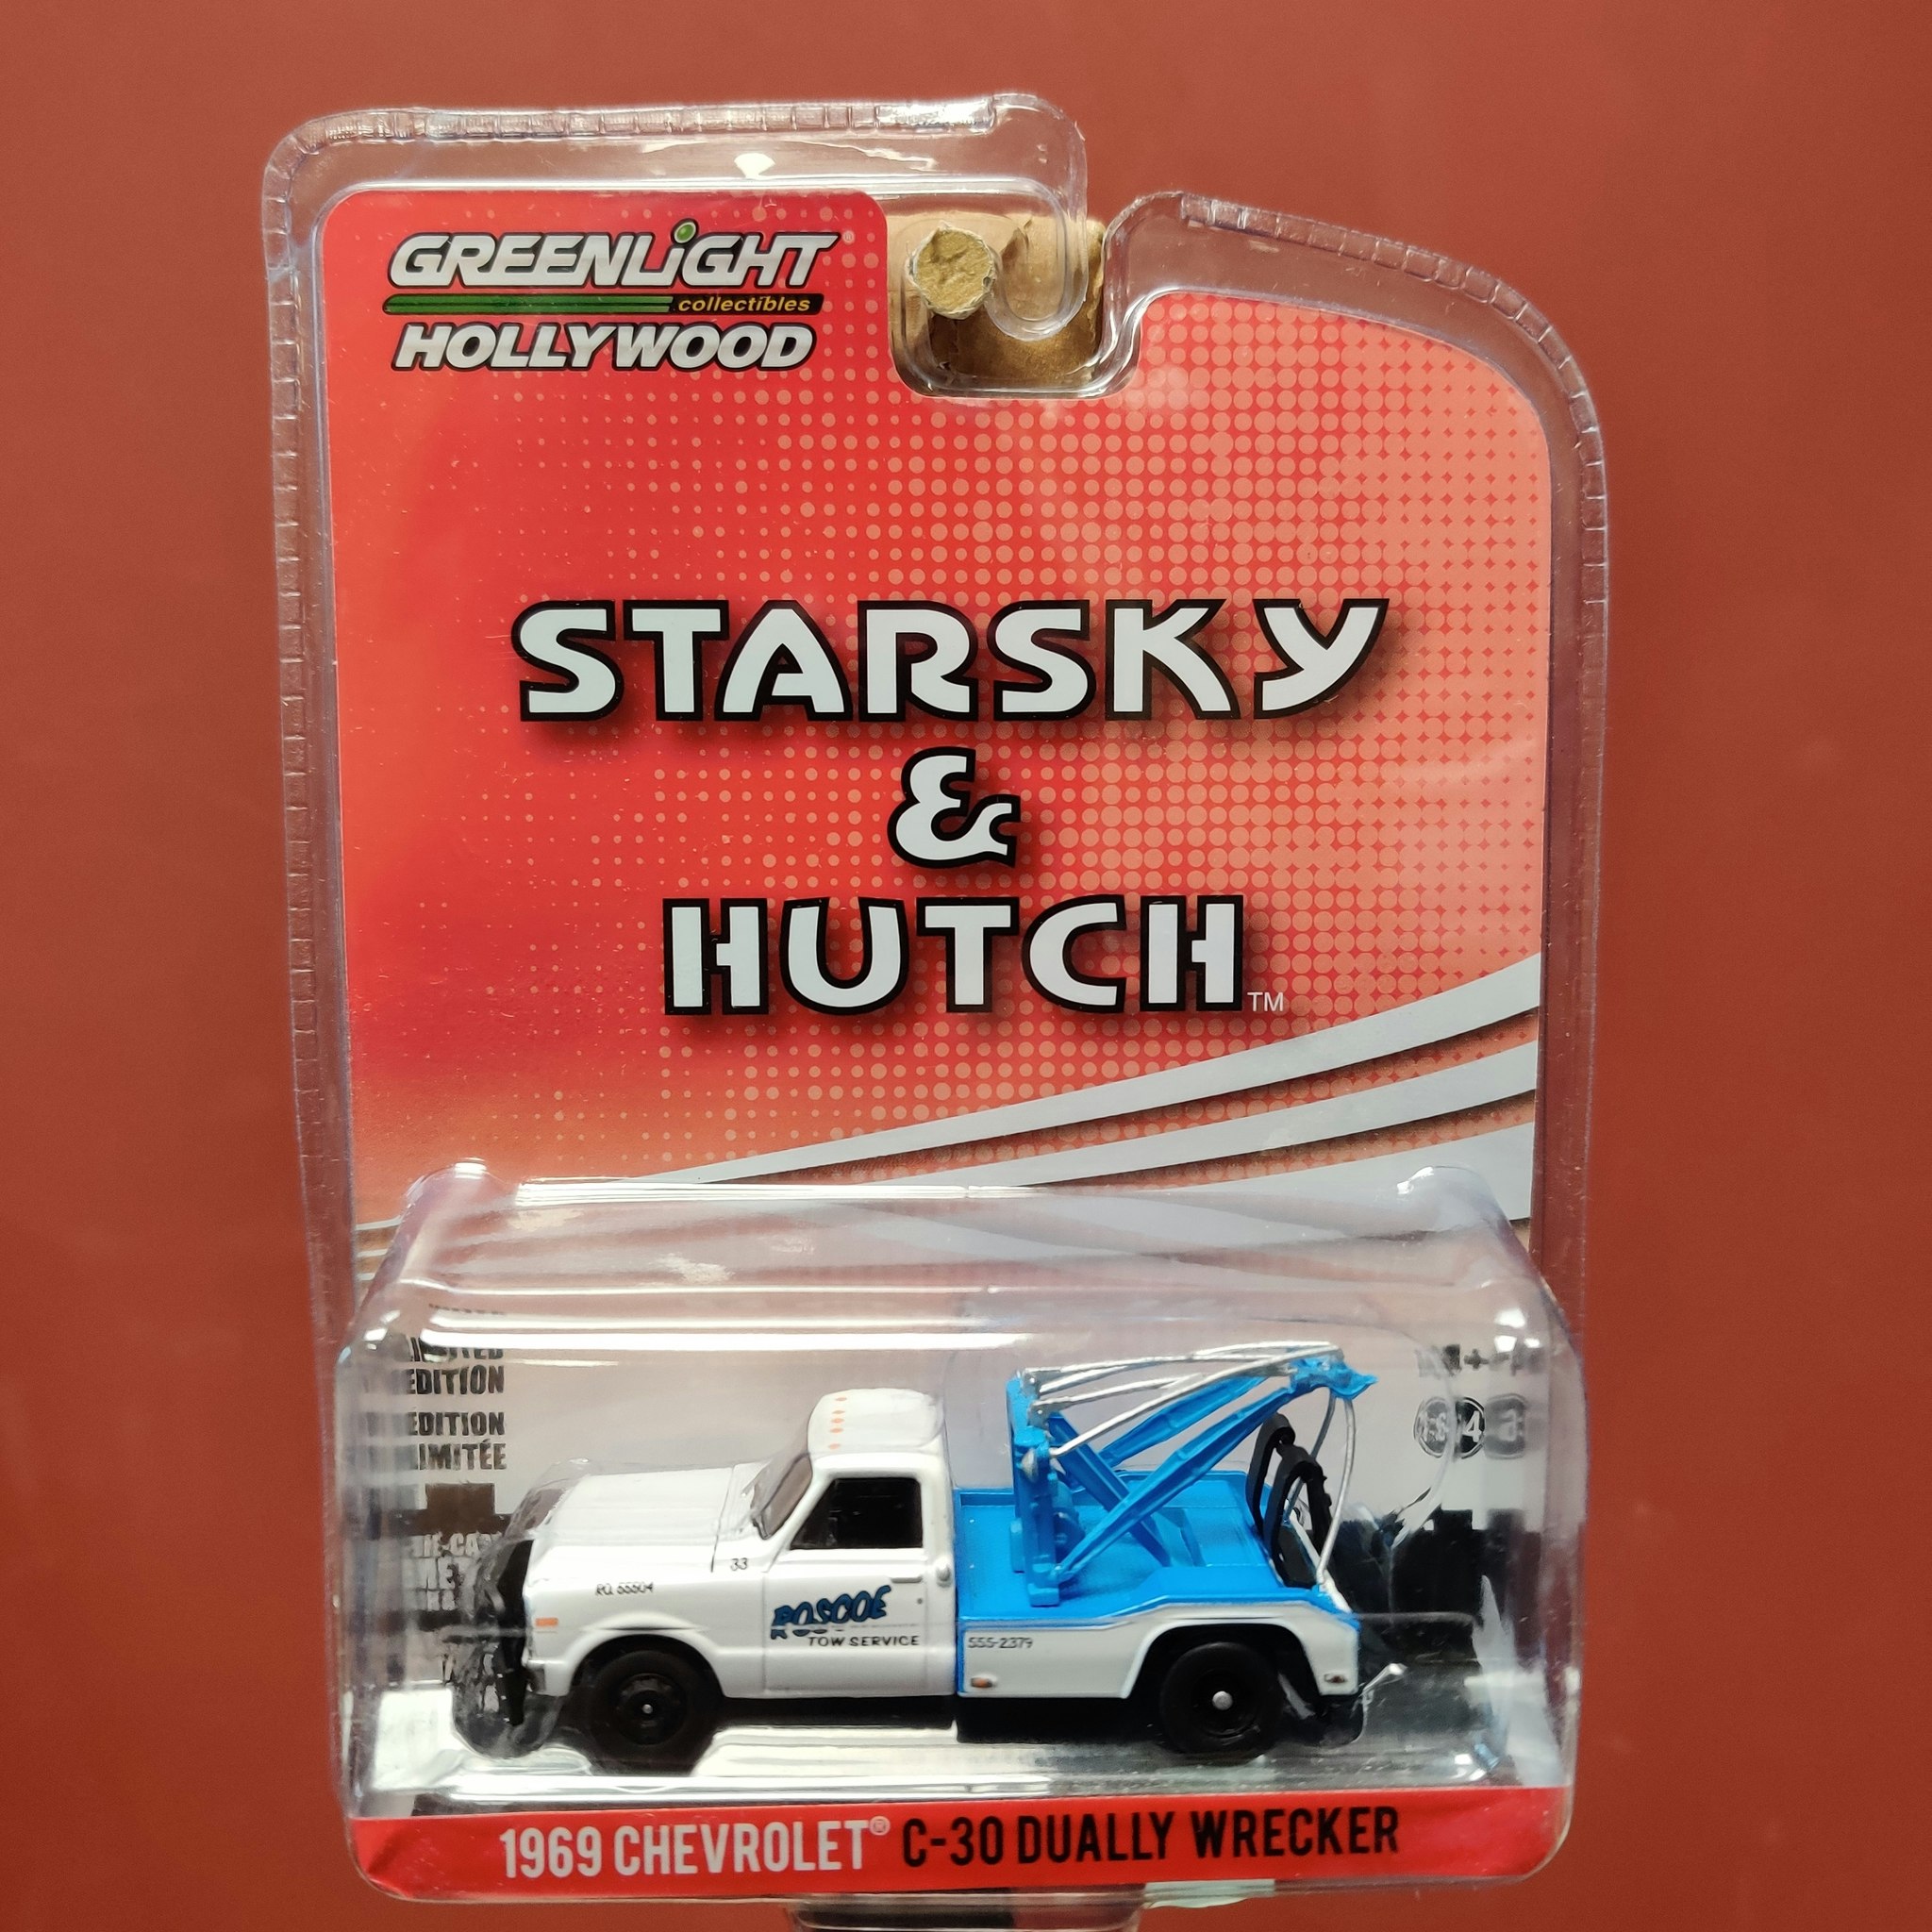 Skala 1/64 Chevrolet C-30 Dually Wrecker 63' "Starsky & Hutch" från Greenlight Hollywood